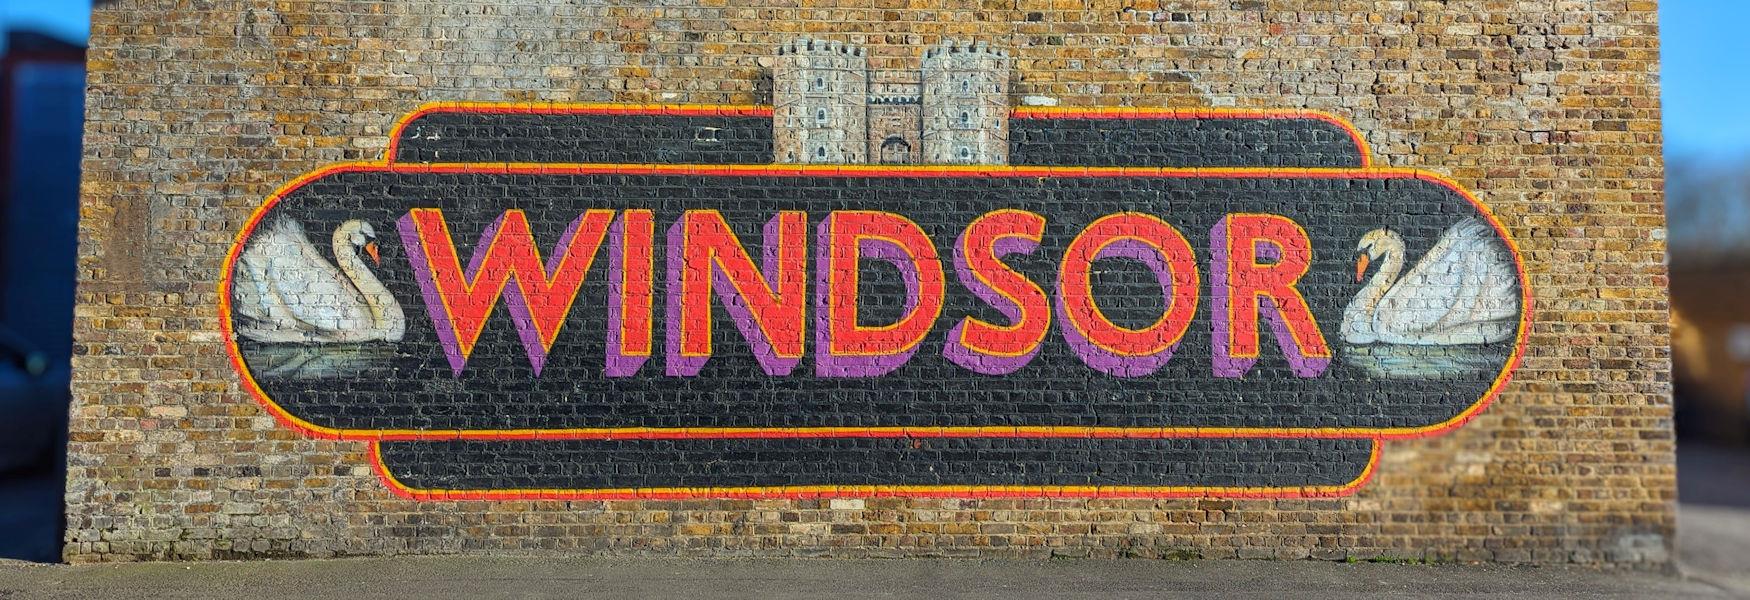 Windsor Mural, image Windsor & Eton Photo Art